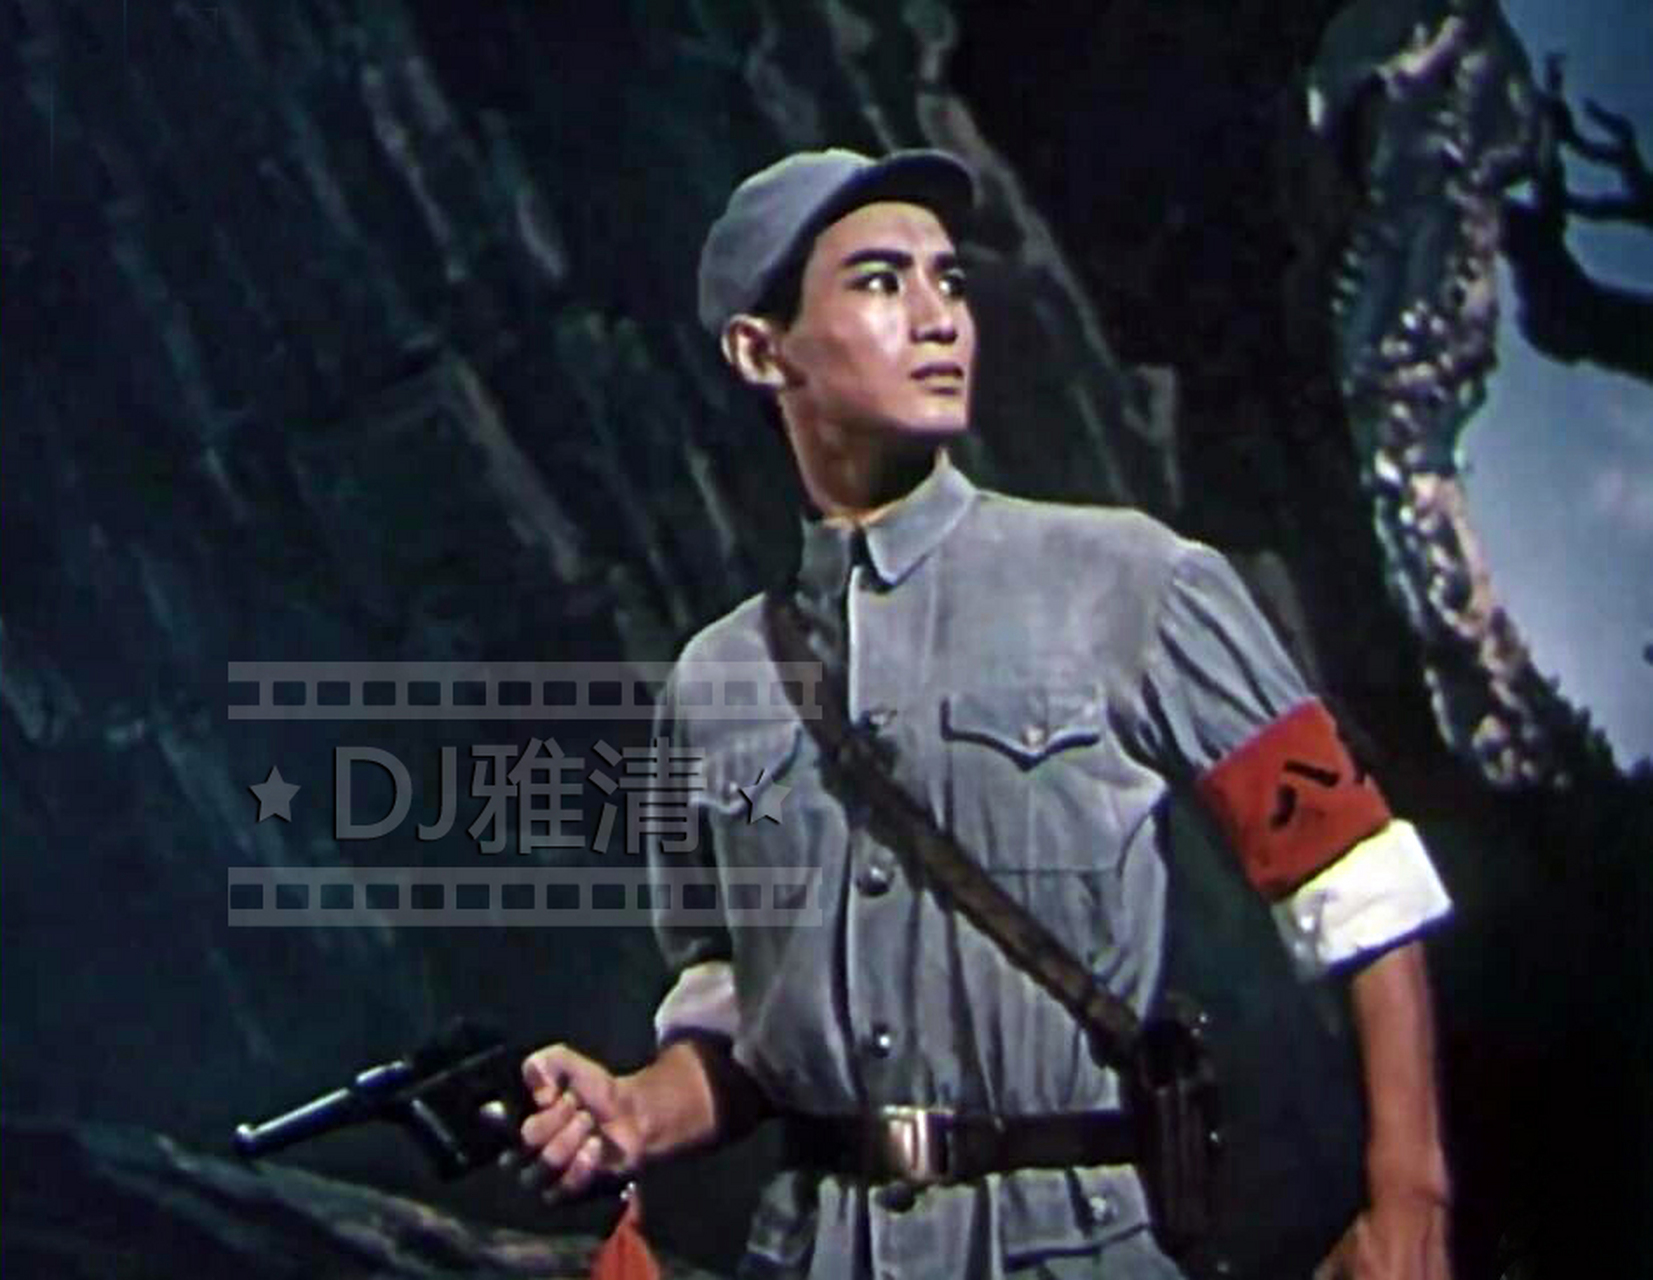 凌桂明,1965年出演《白毛女》时的青涩模样 真正的中国式帅哥:凌桂明.